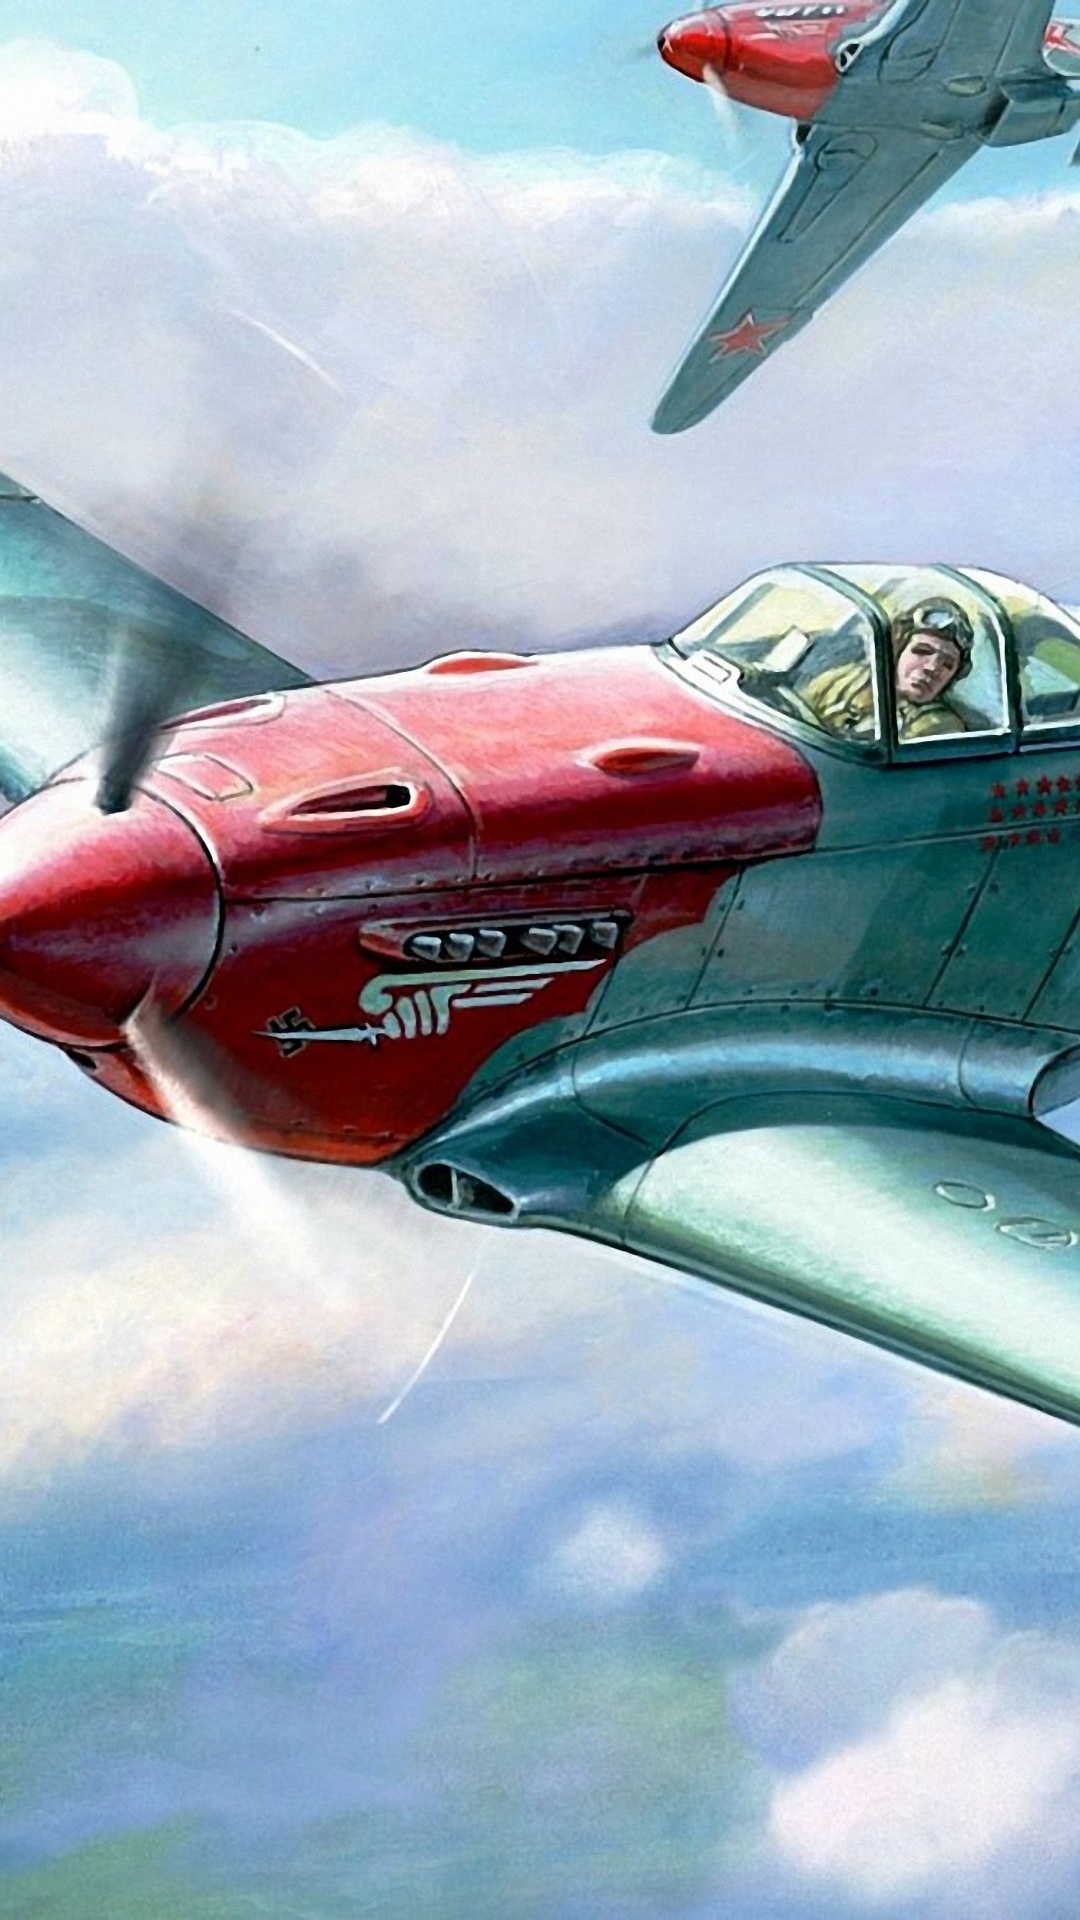 Avion à Réaction Rouge et Gris Dans Les Airs. Wallpaper in 1080x1920 Resolution